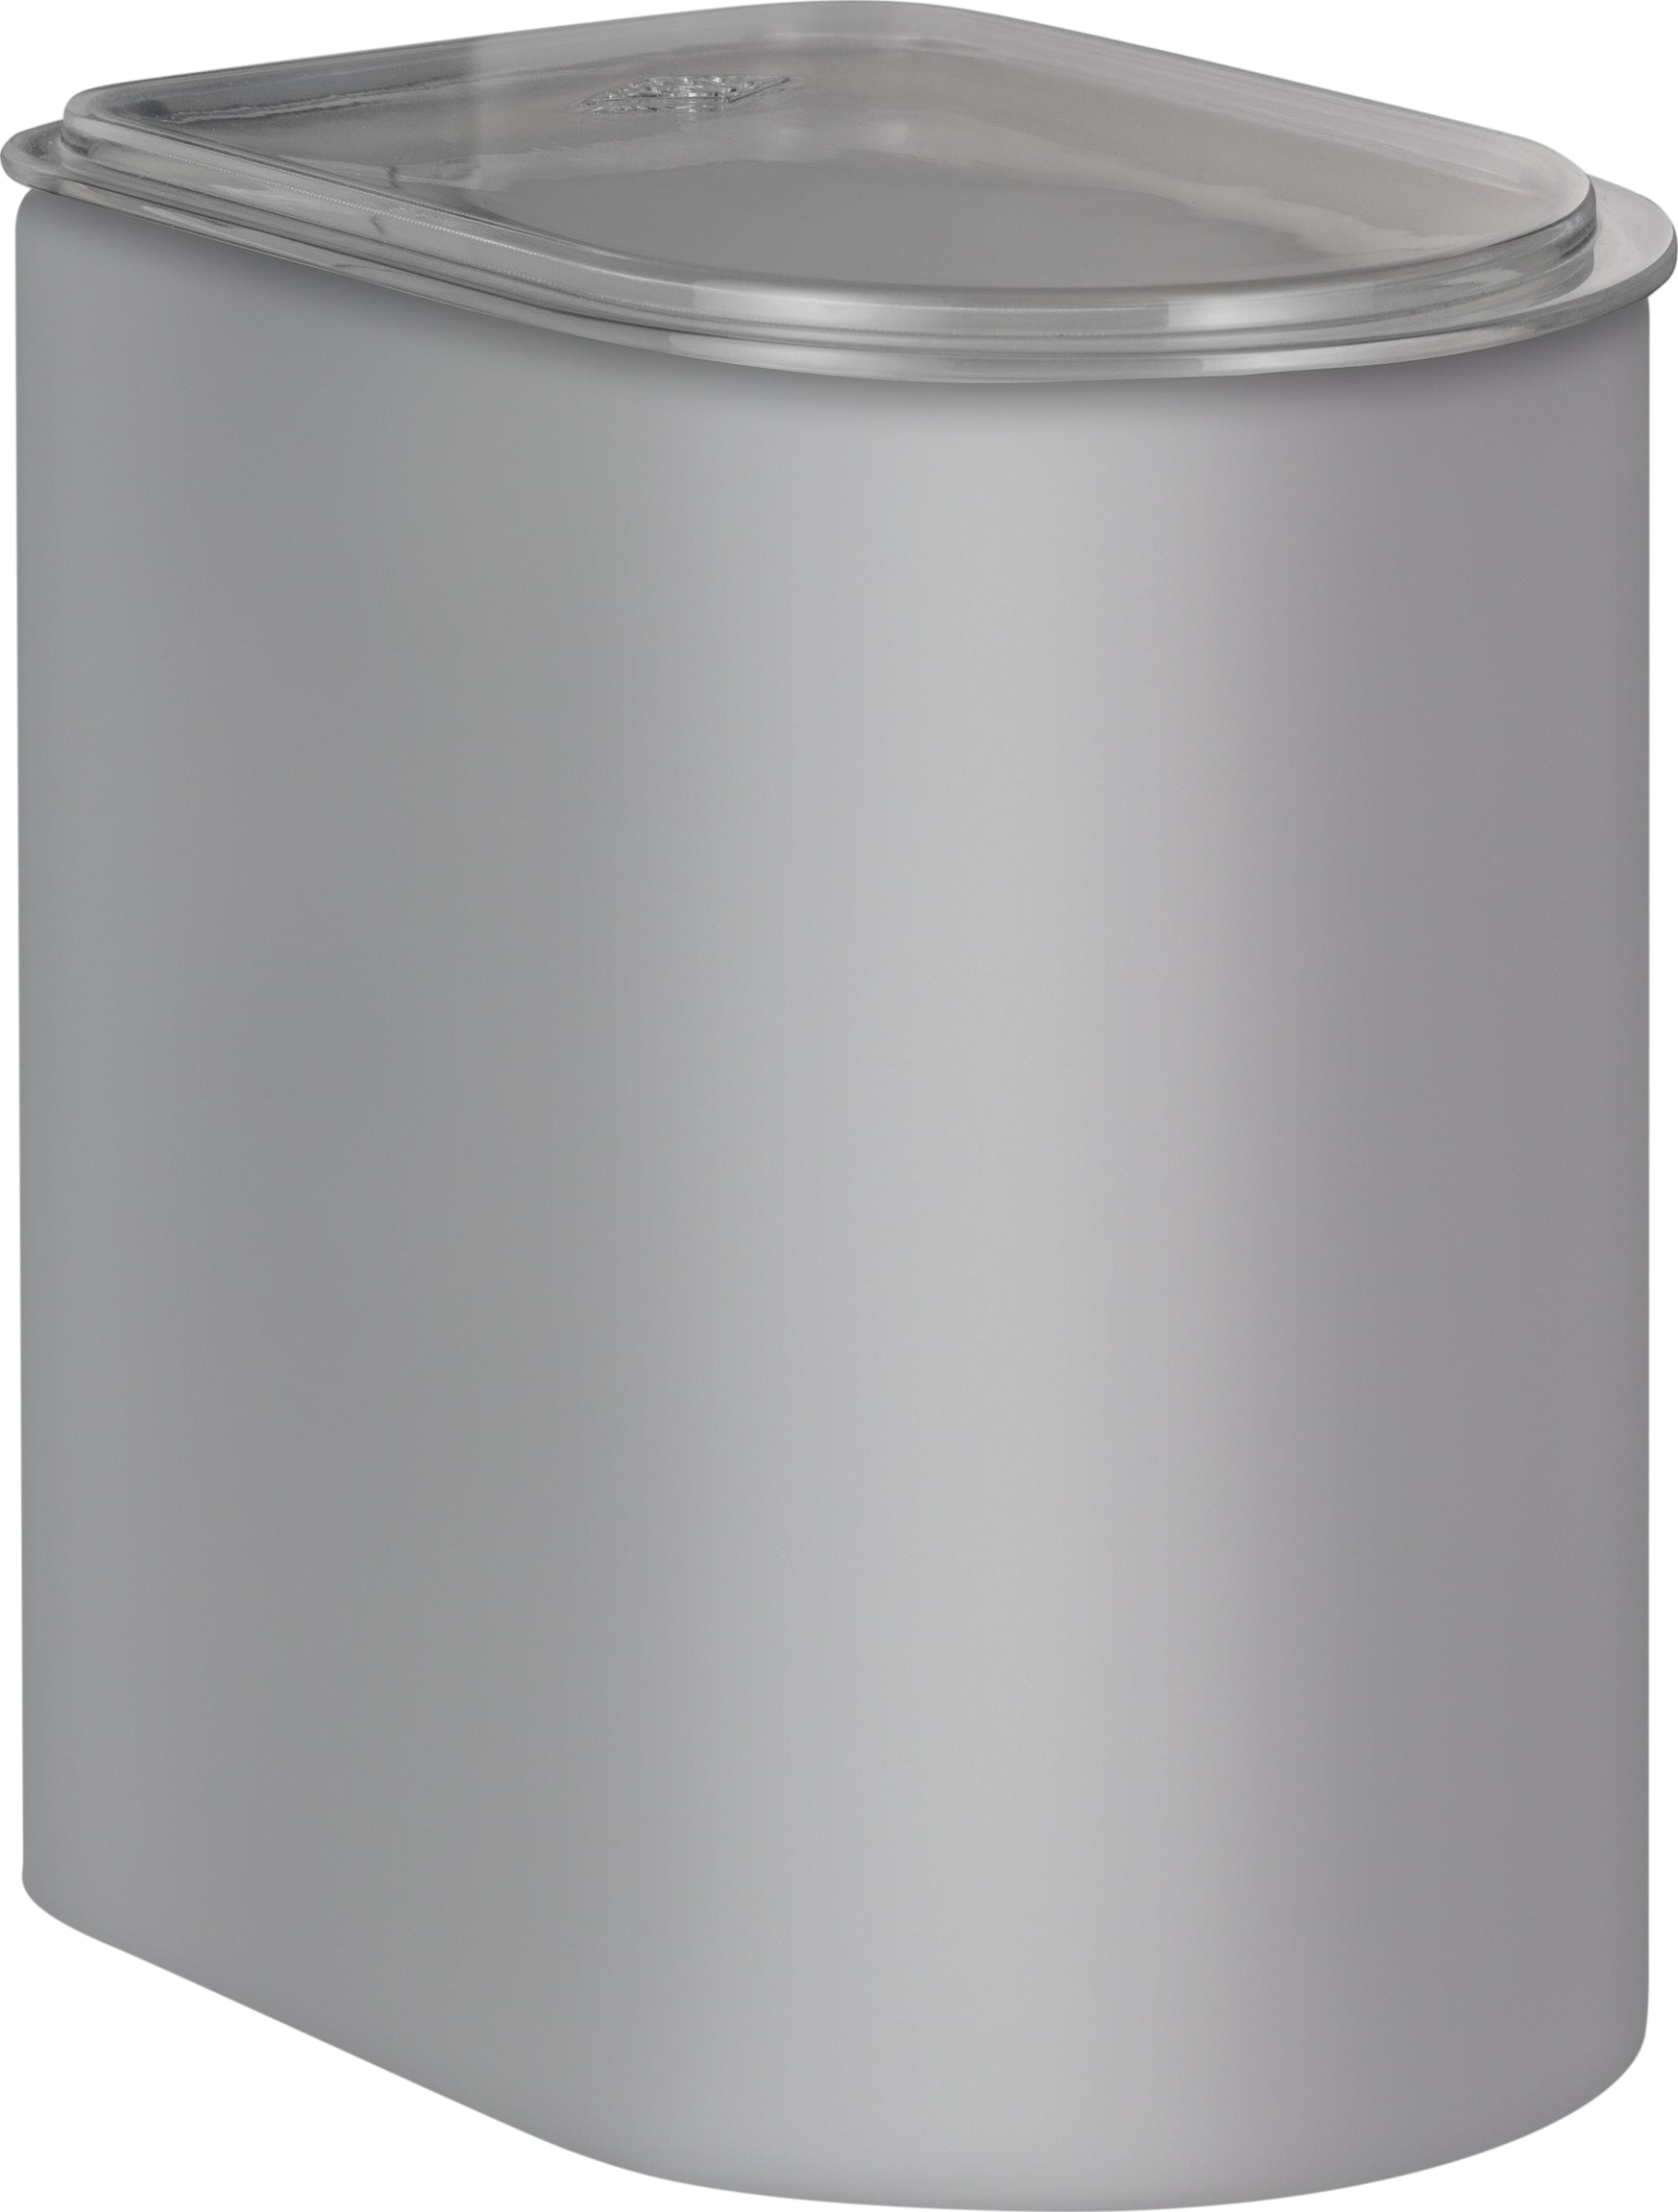 Wesco Canister 2,2 litro con tapa acrílica, gris frío Matt